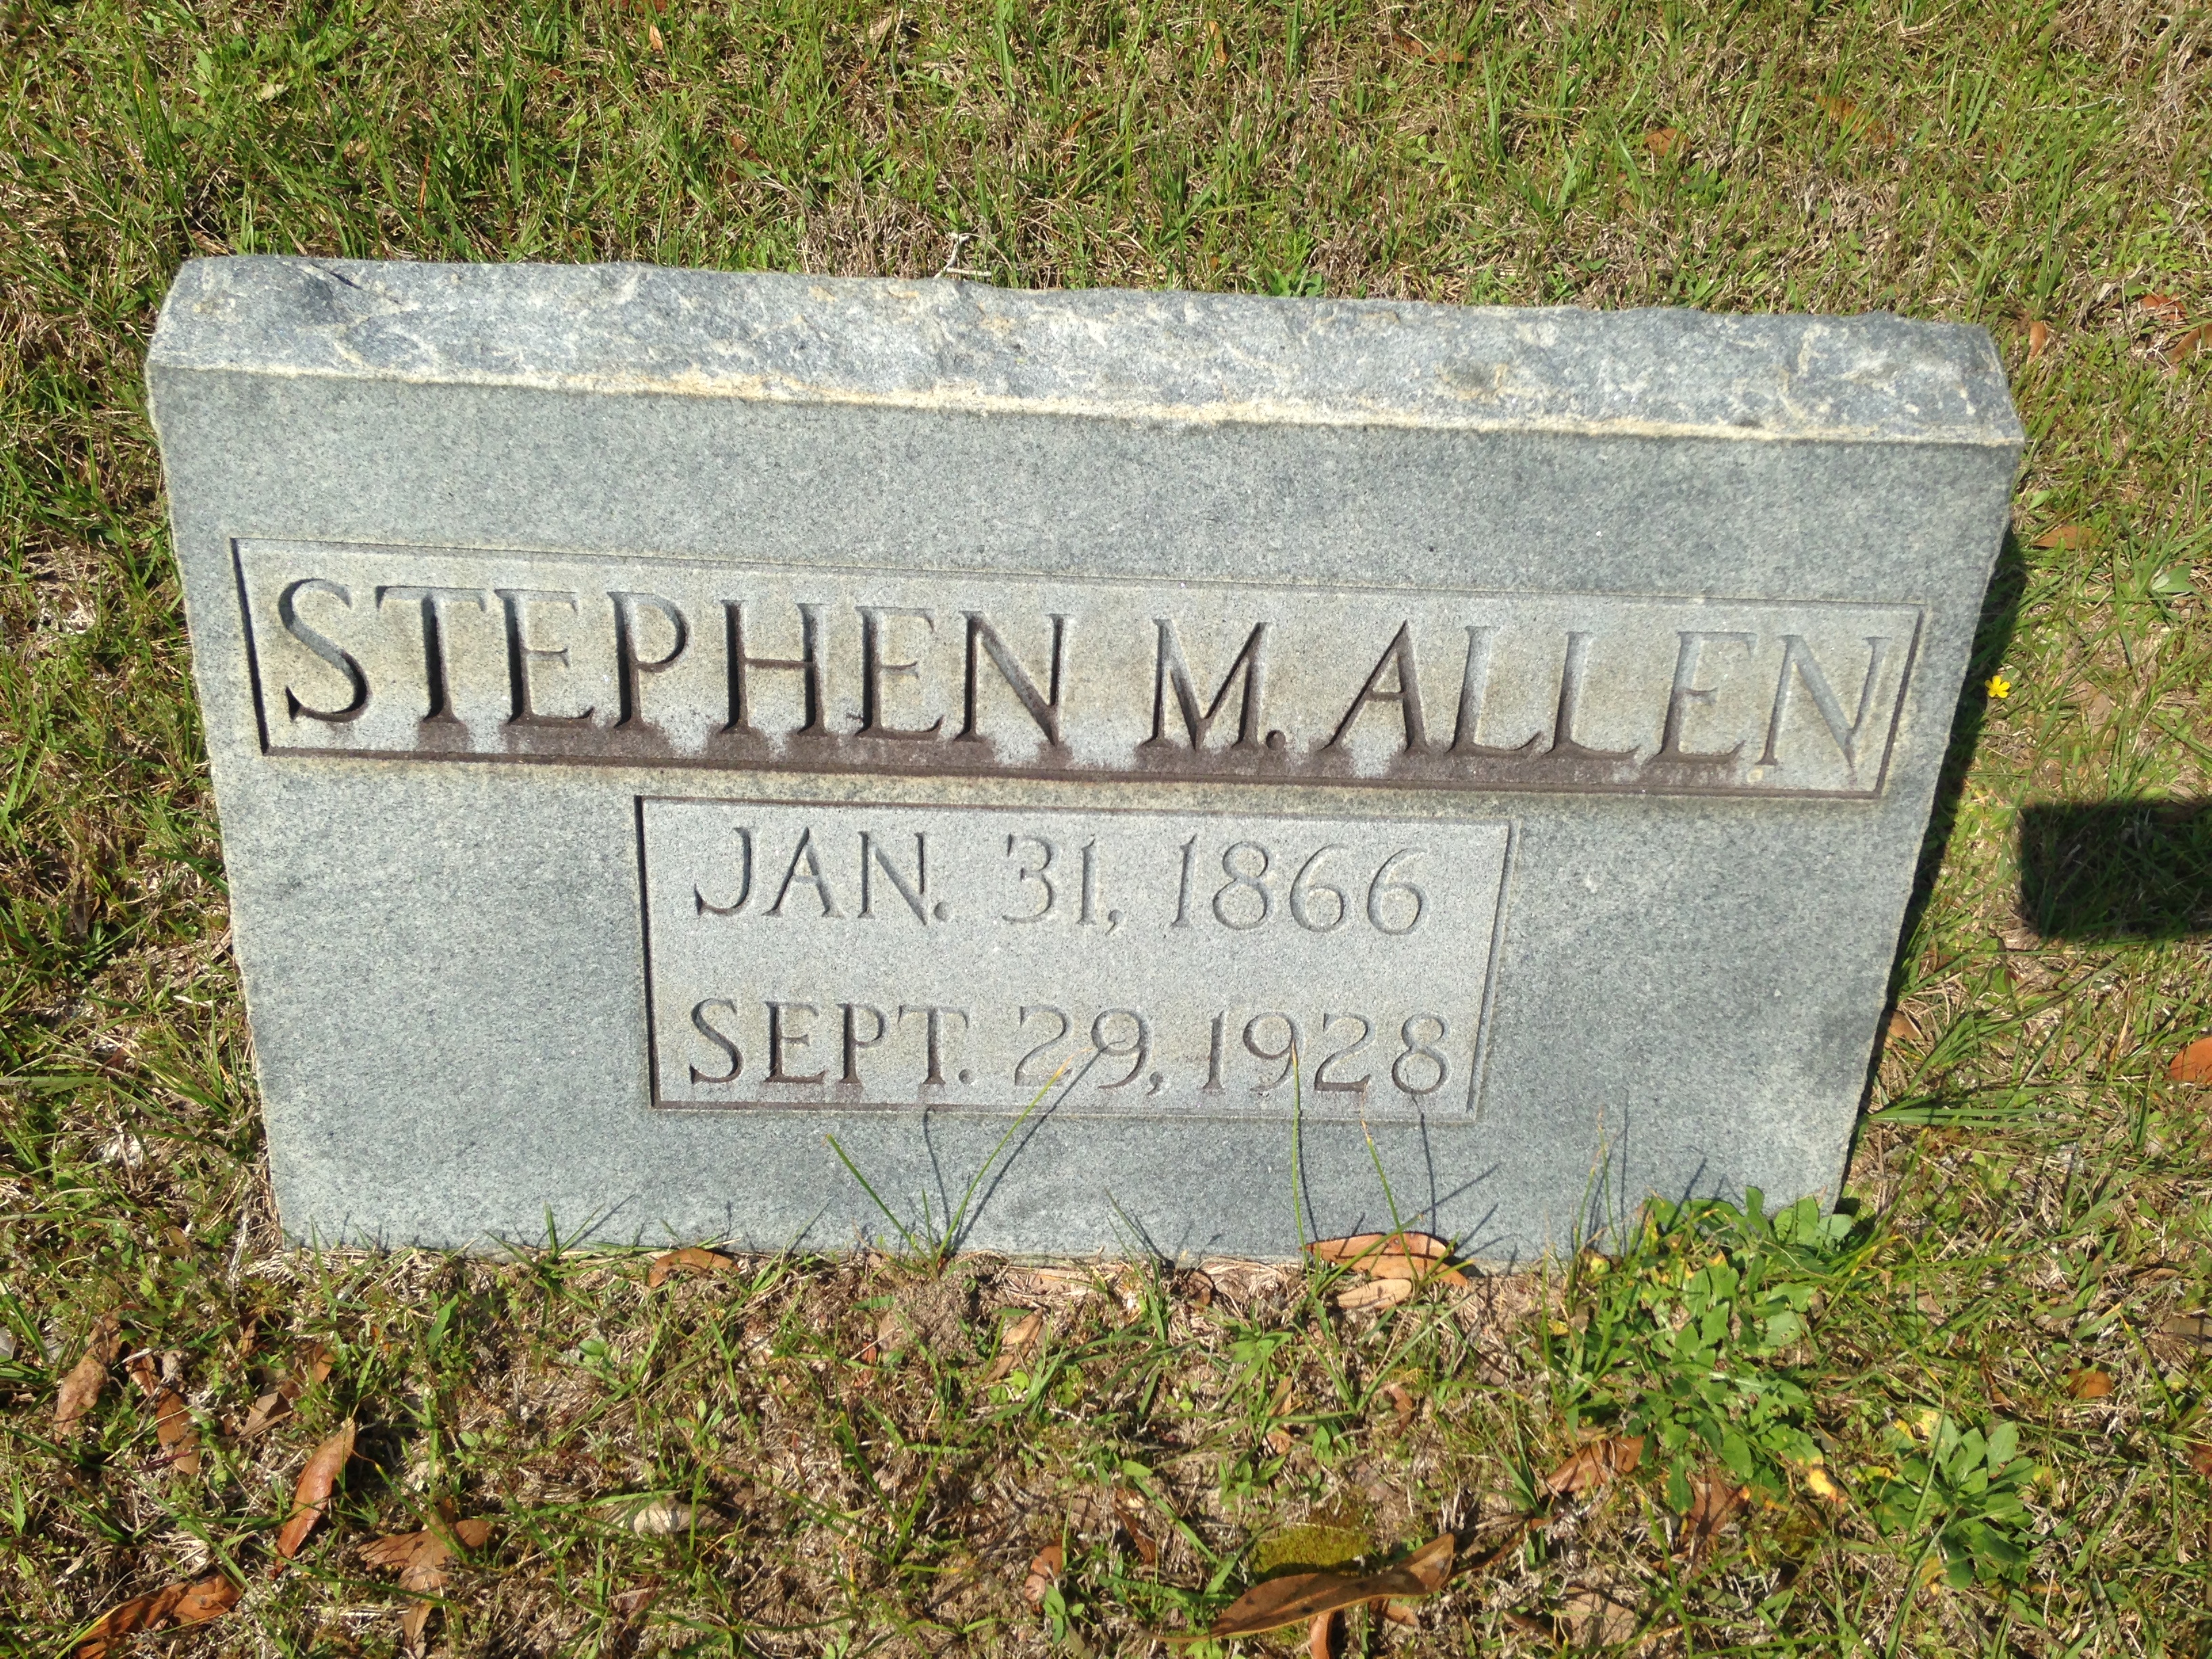 Stephen M. Allen